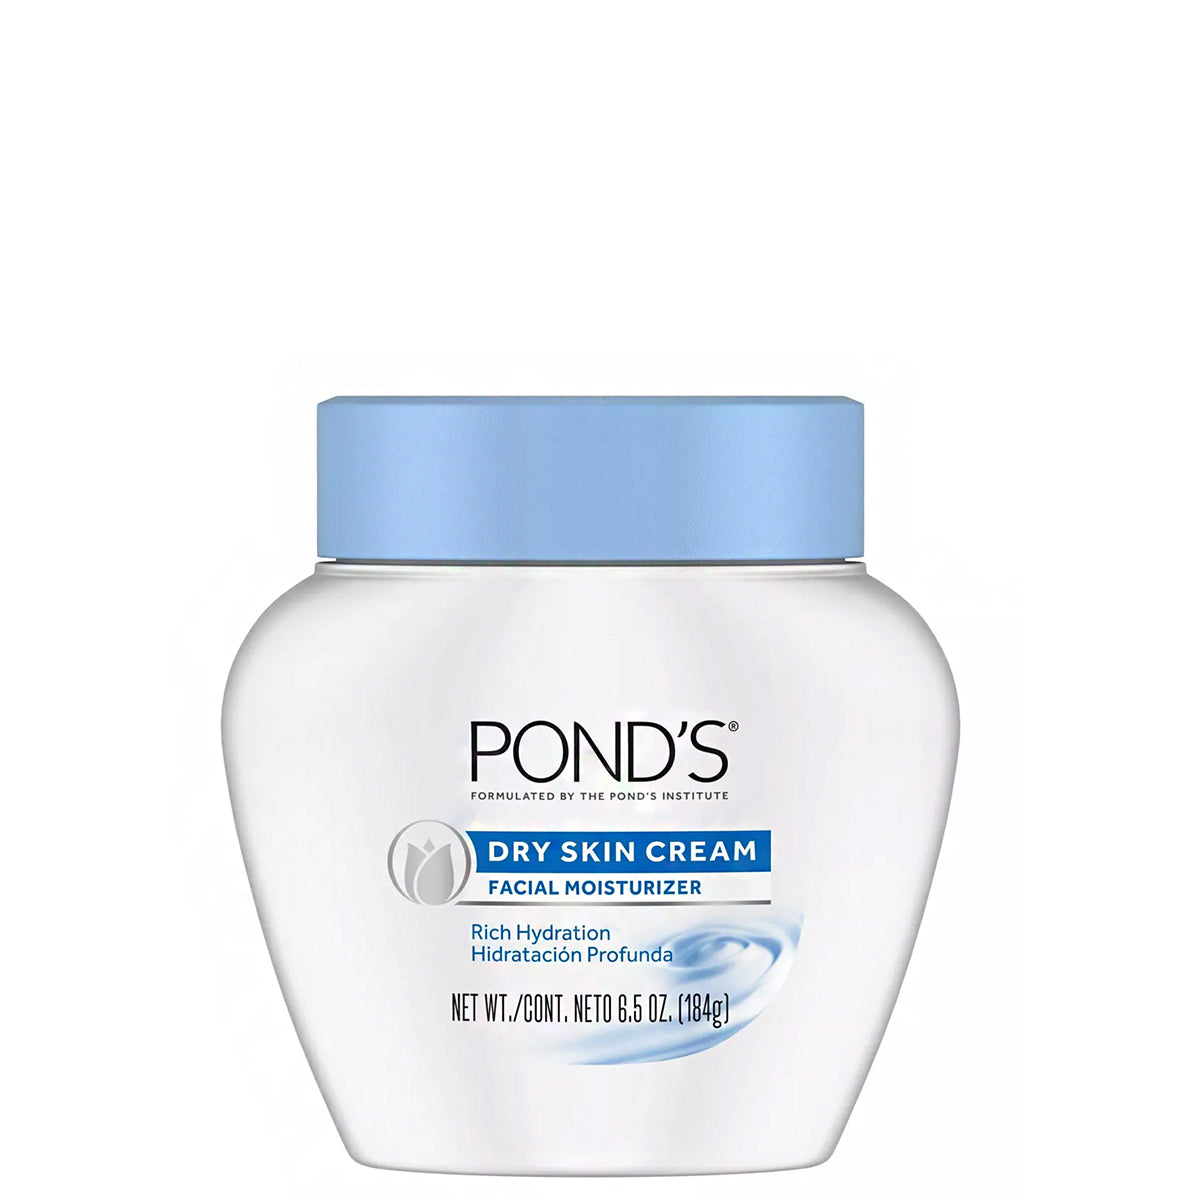 Pond's Dry Skin Cream Facial Moisturizer 6.5oz